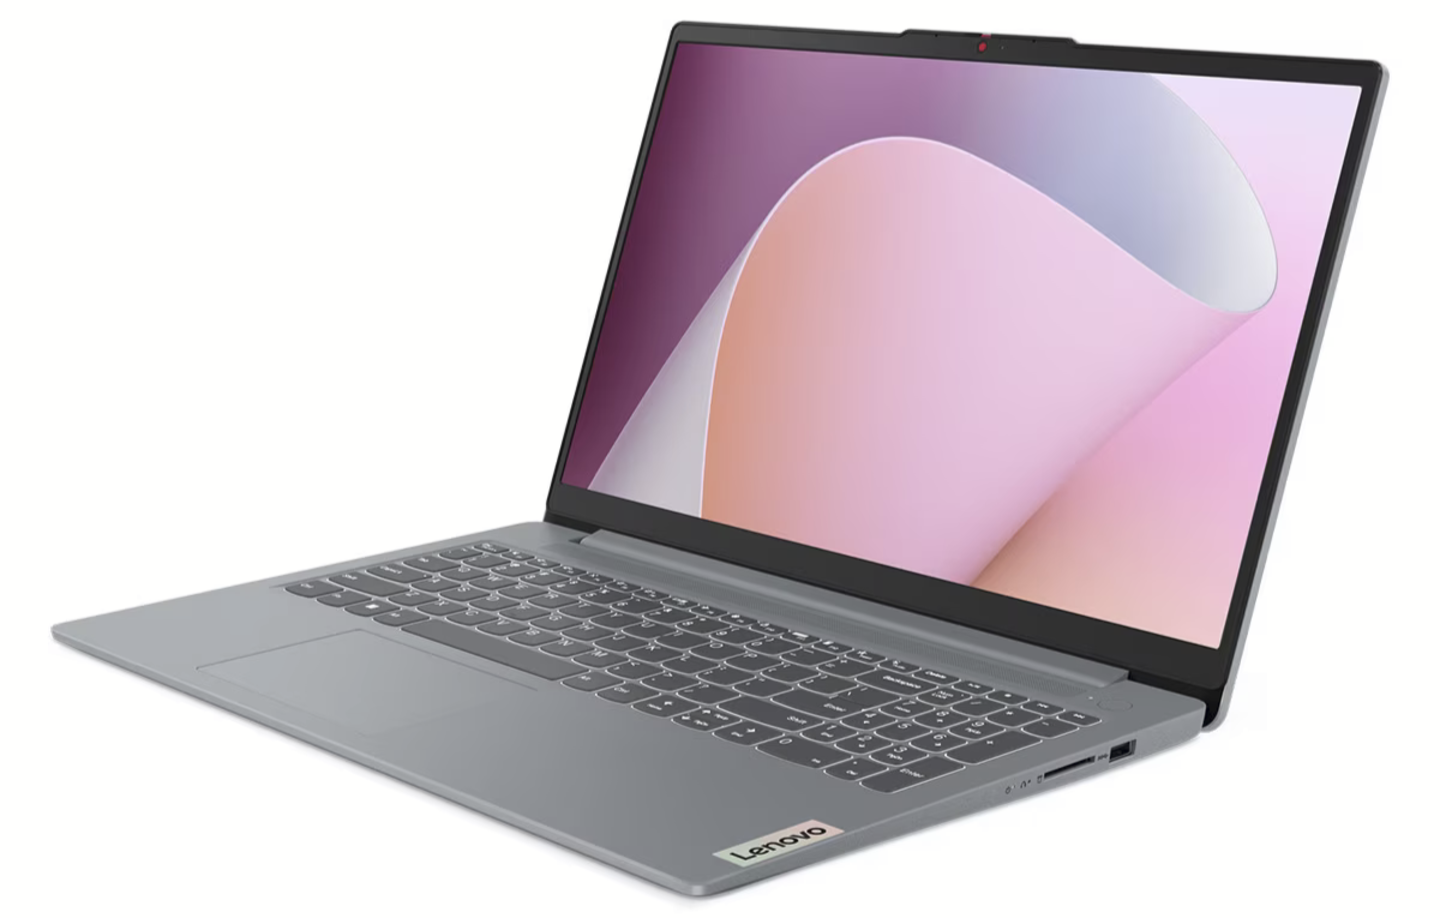 Por solo 249 euros puedes comprar este portátil de Lenovo ideal